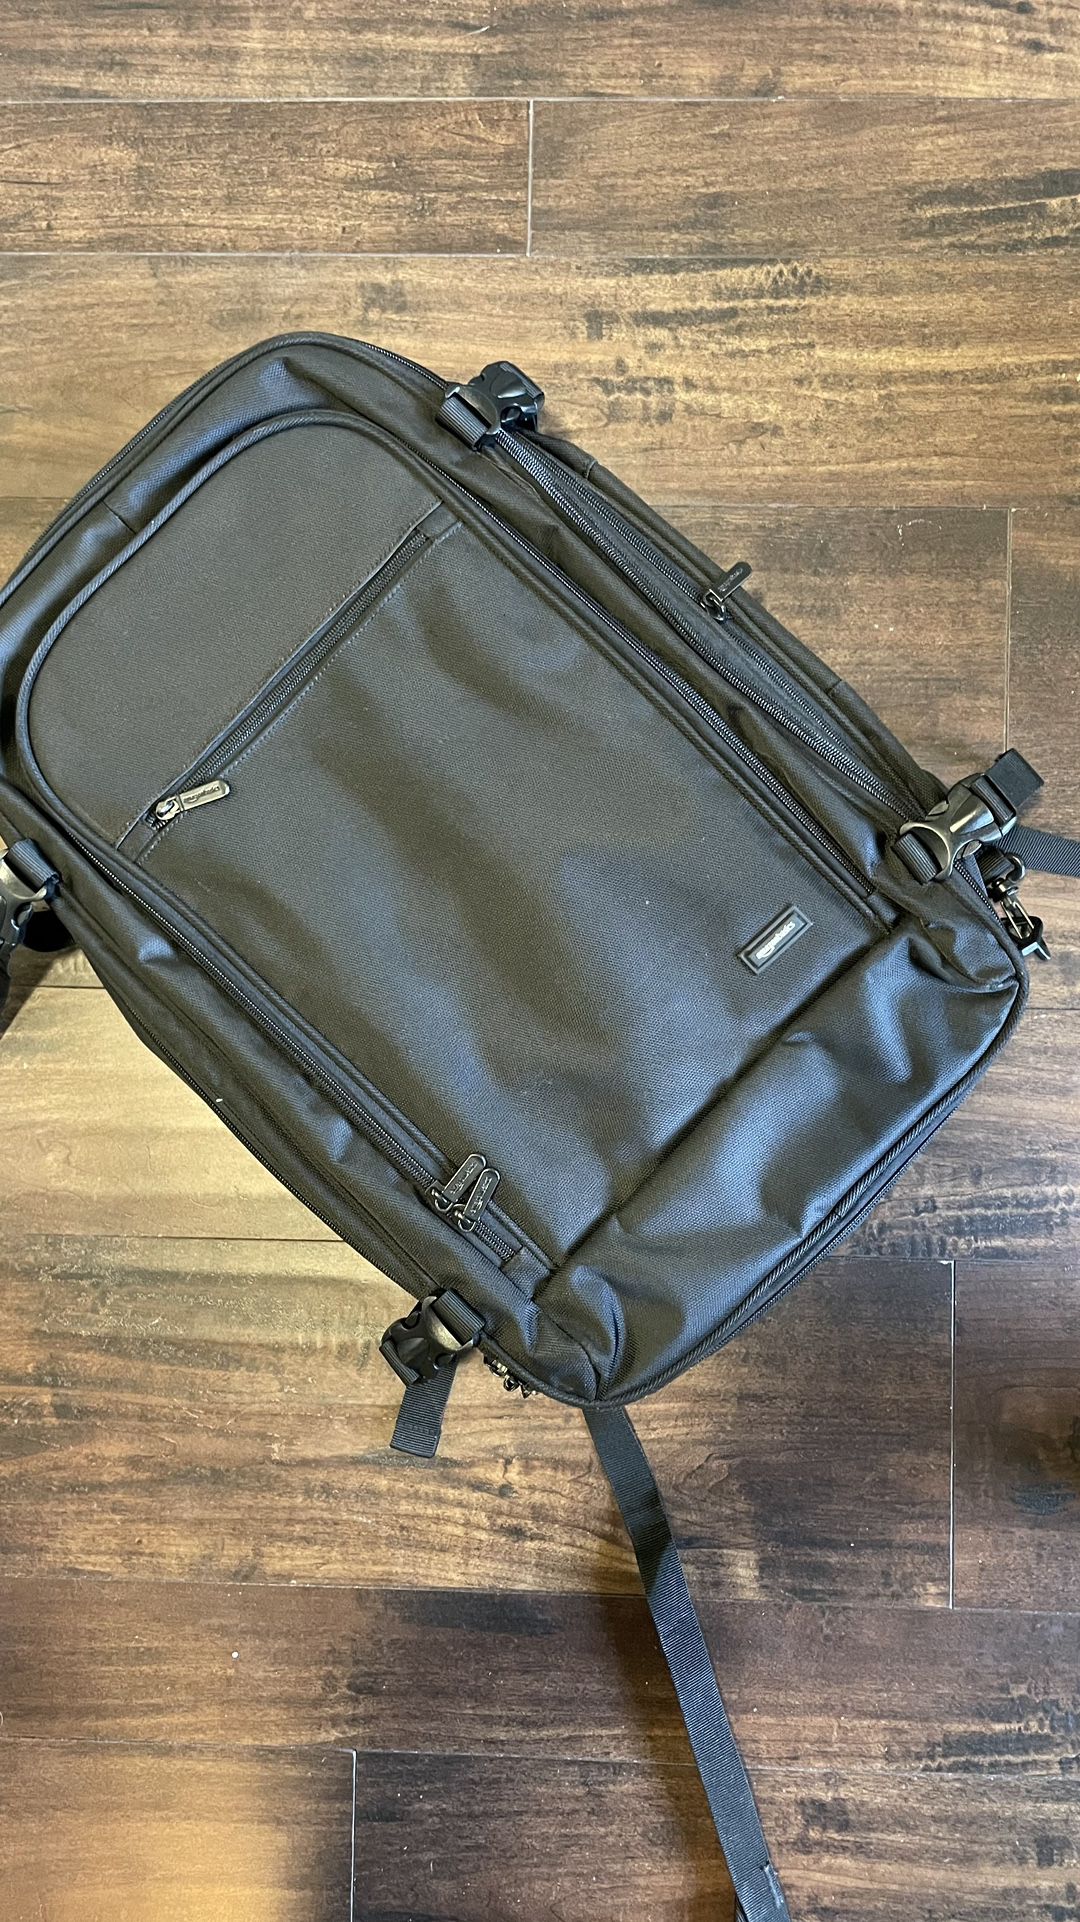 Amazon Basics Luggage Bag